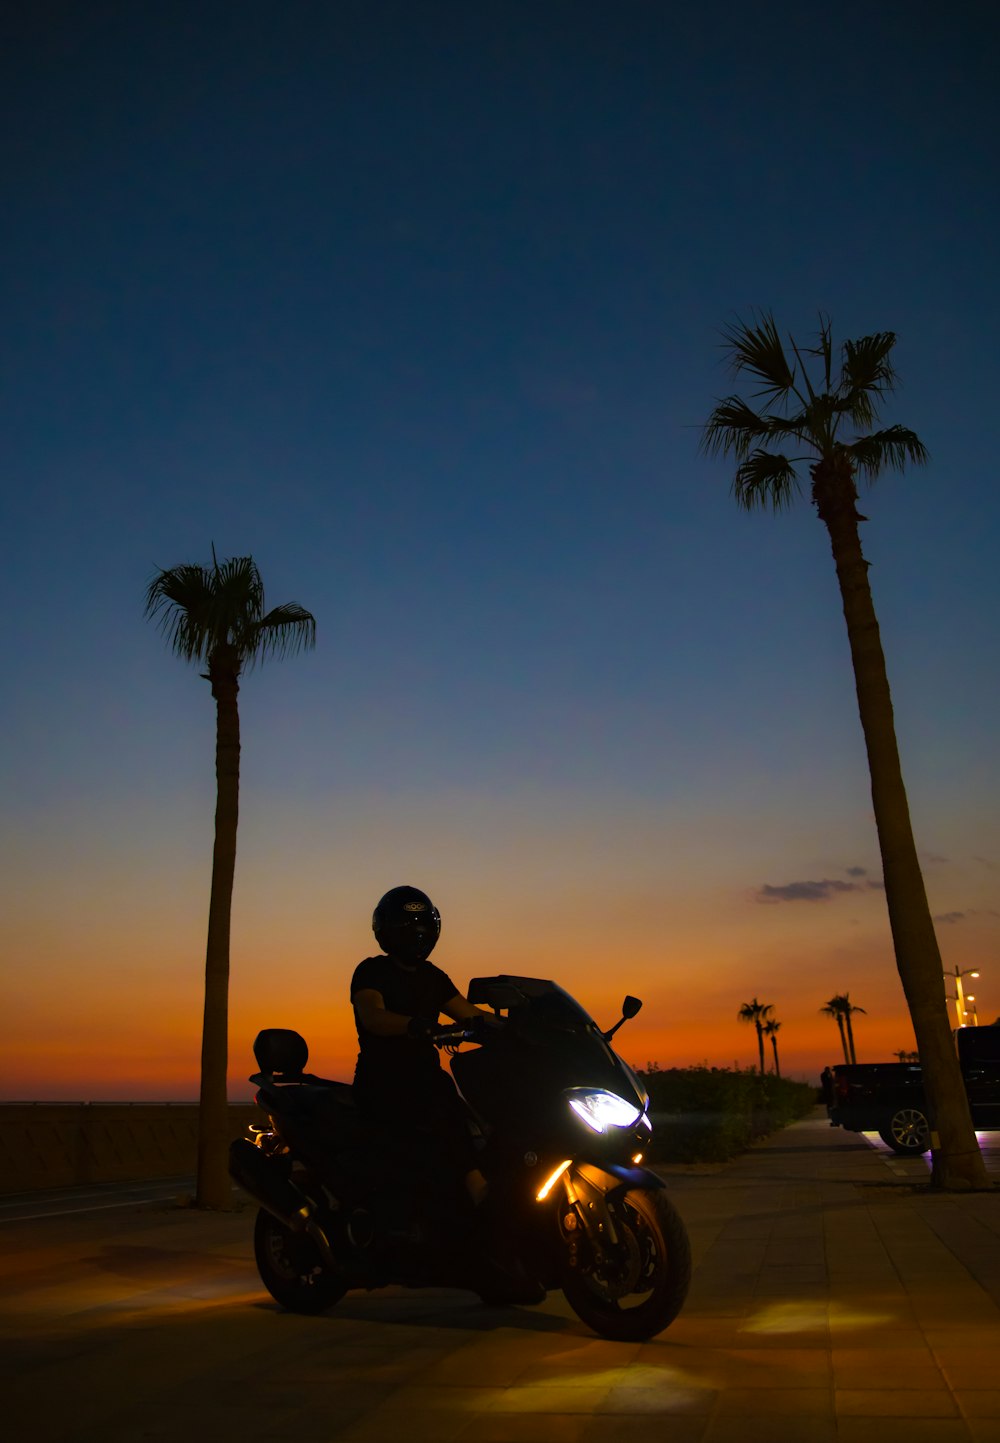 Un hombre conduciendo una motocicleta por una calle junto a palmeras